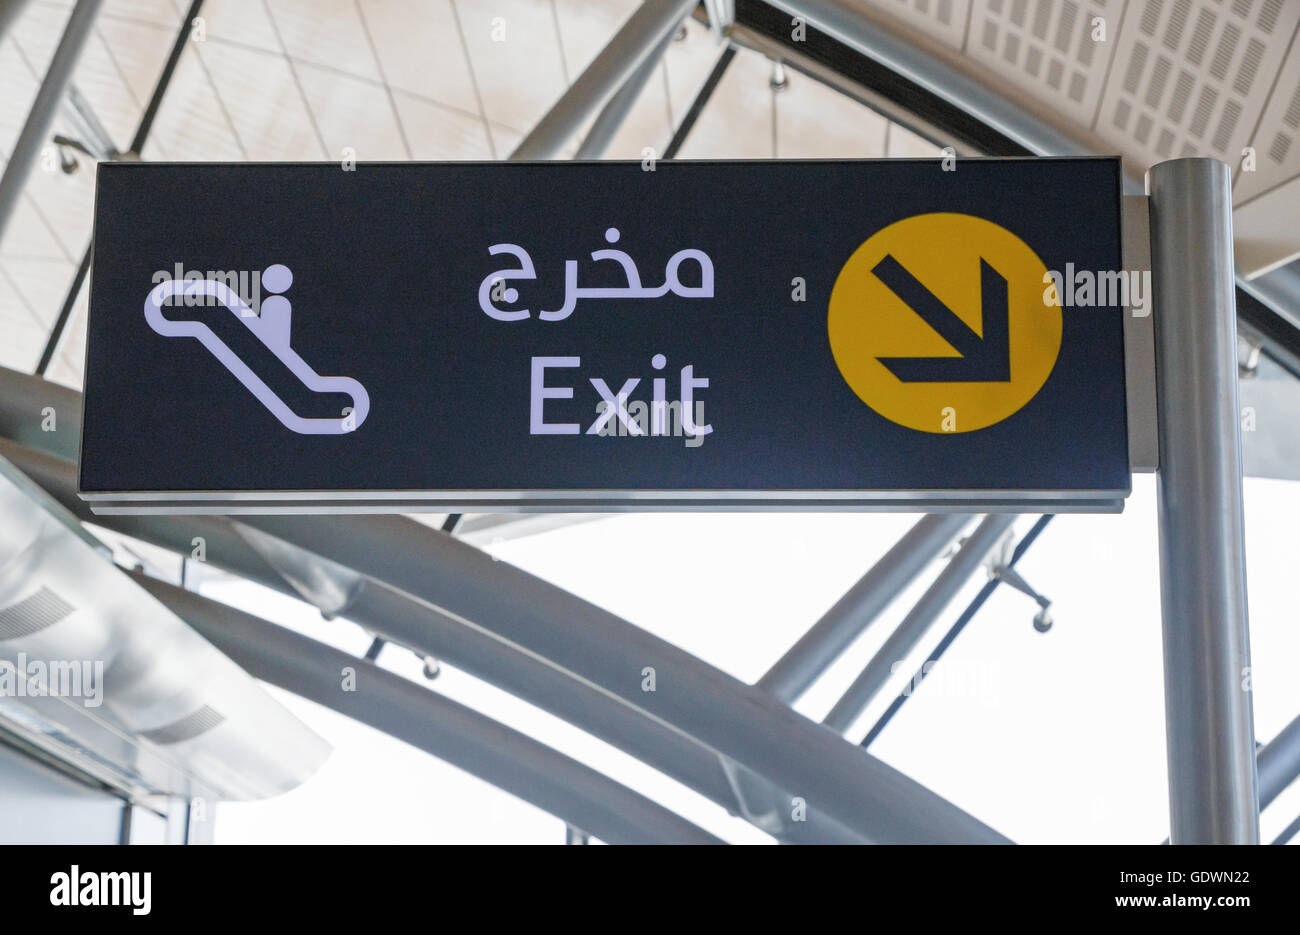 Exit sign on Dubai metro station Stock Photo